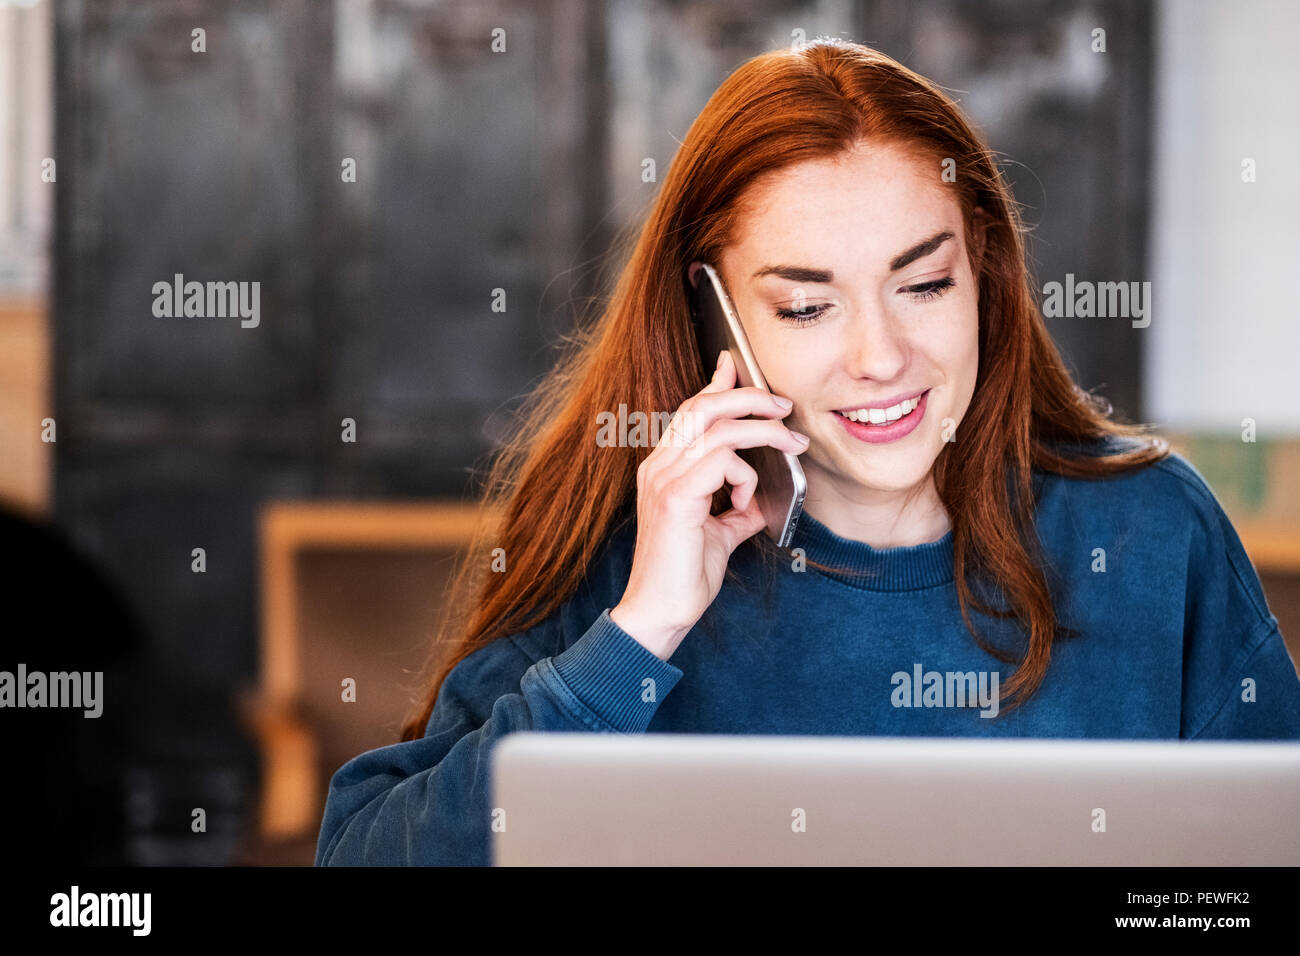 Lächelnde junge Frau mit langen roten Haaren sitzen am Tisch, Arbeiten am Laptop, mit Handy. Stockfoto